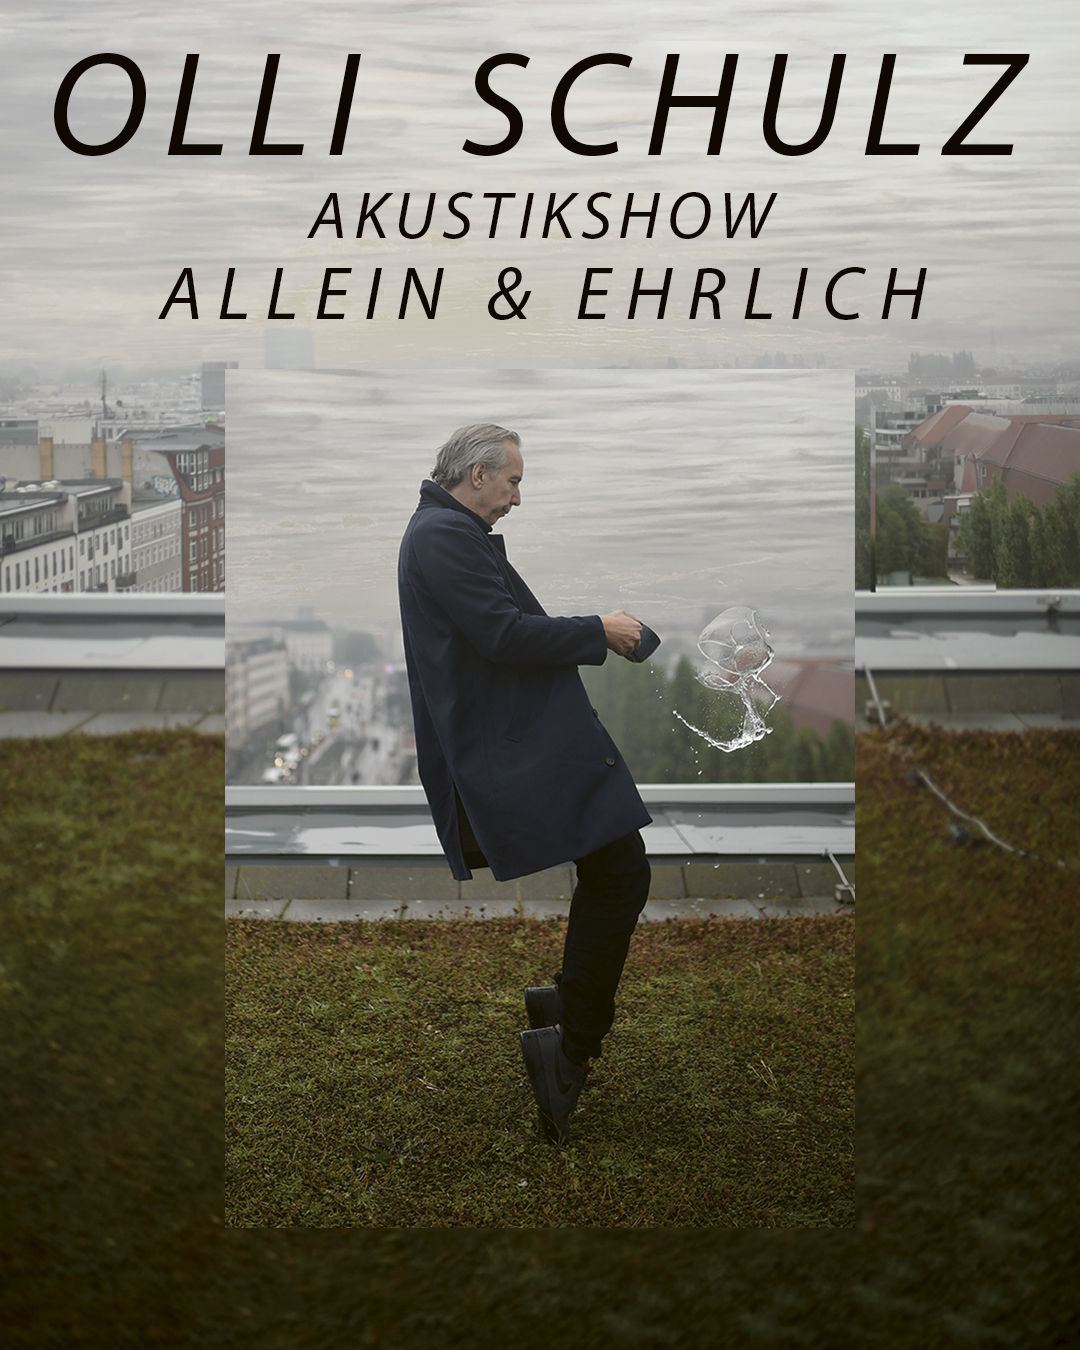 OLLI SCHULZ - acoustic show